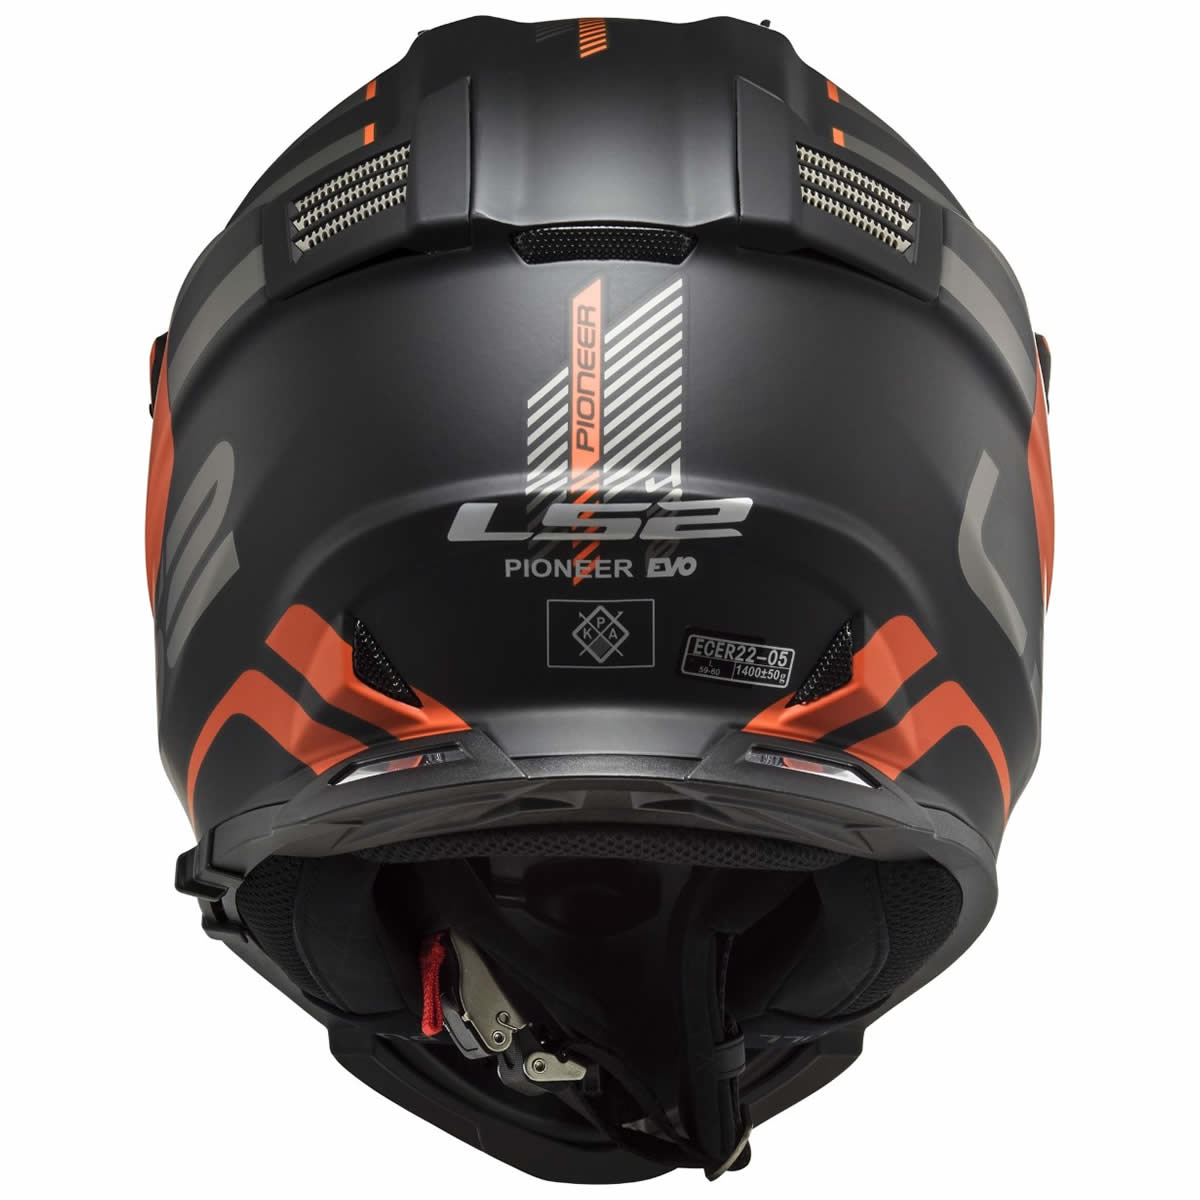 LS2 Helmets Helm Pioneer Evo MX436 Adventurer, schwarz-orange matt